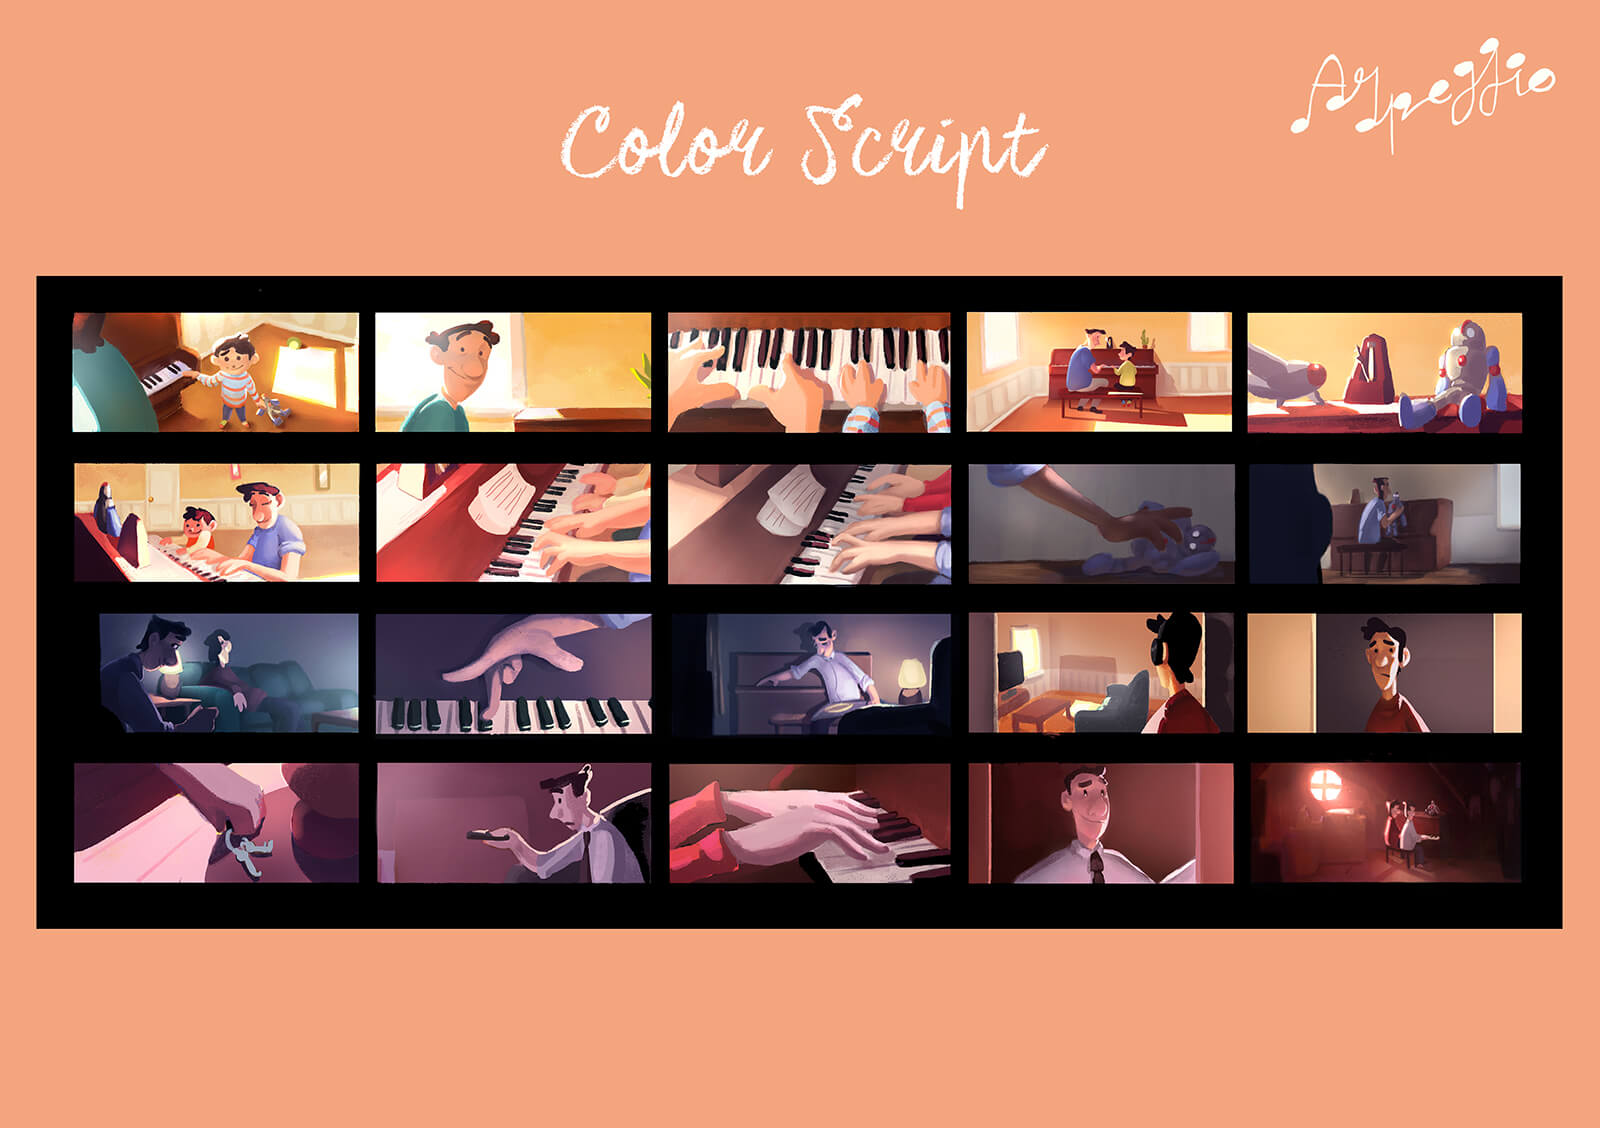 Color script para el cortometraje Arpeggio, incluidas 15 frames que resumen la historia de principio a fin.